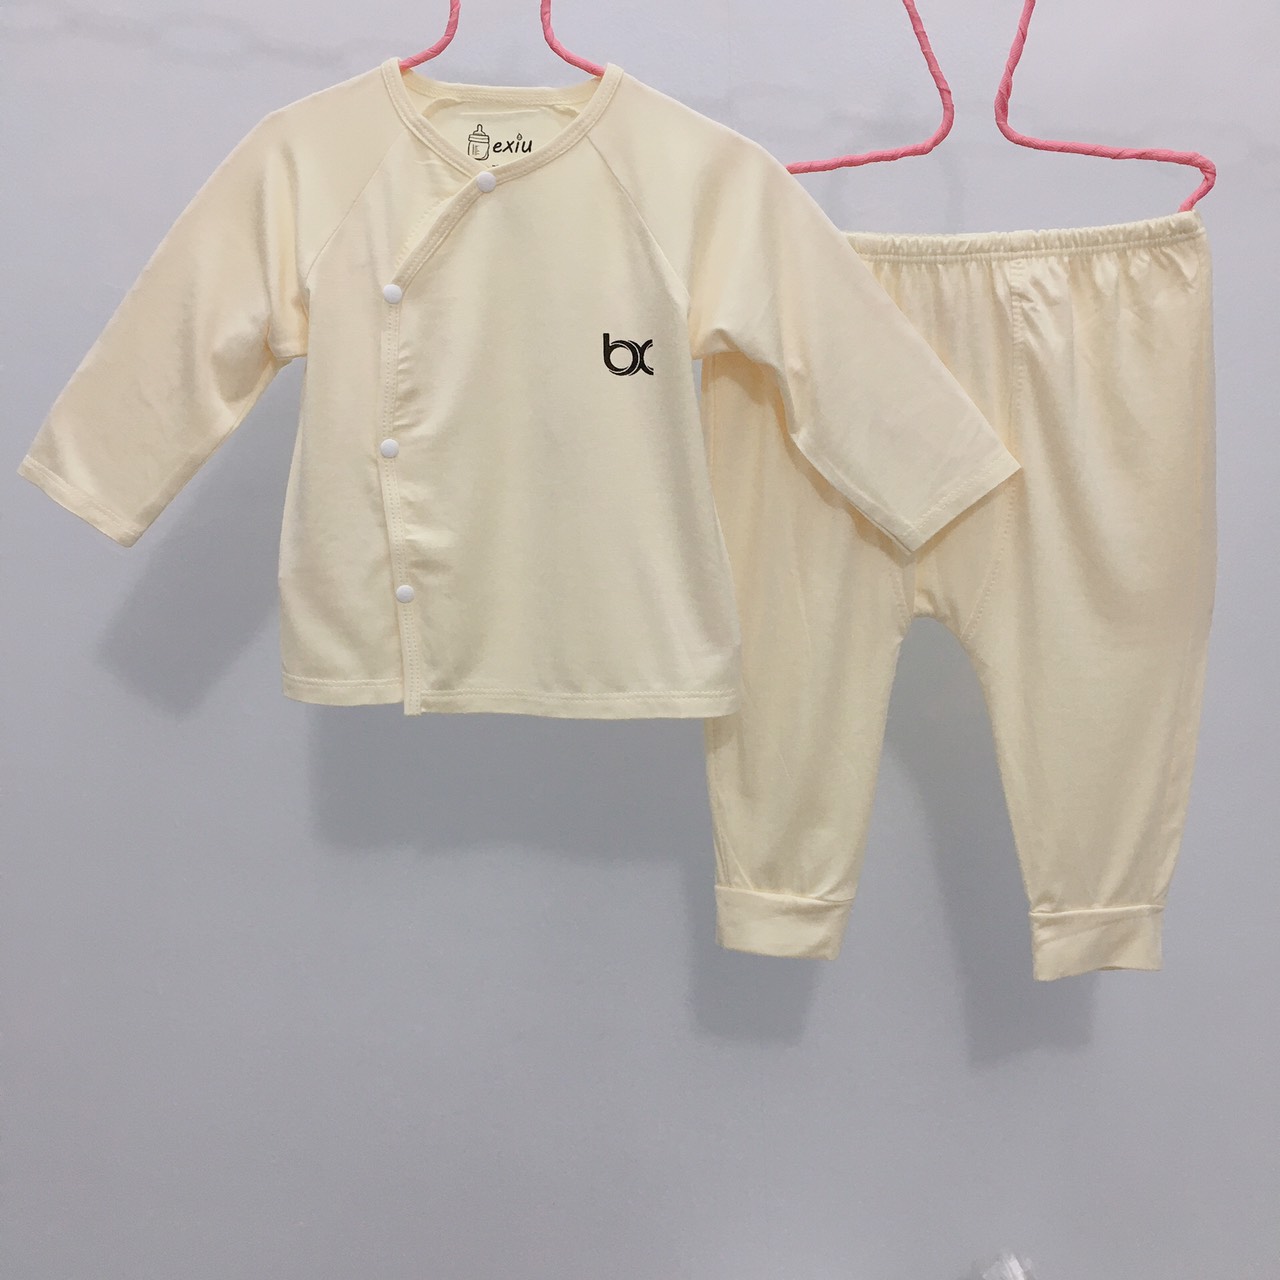 Hcmbộ dài cài lệch bexiu bx - quần áo trẻ sơ sinh thun cotton lạnh mềm - ảnh sản phẩm 3